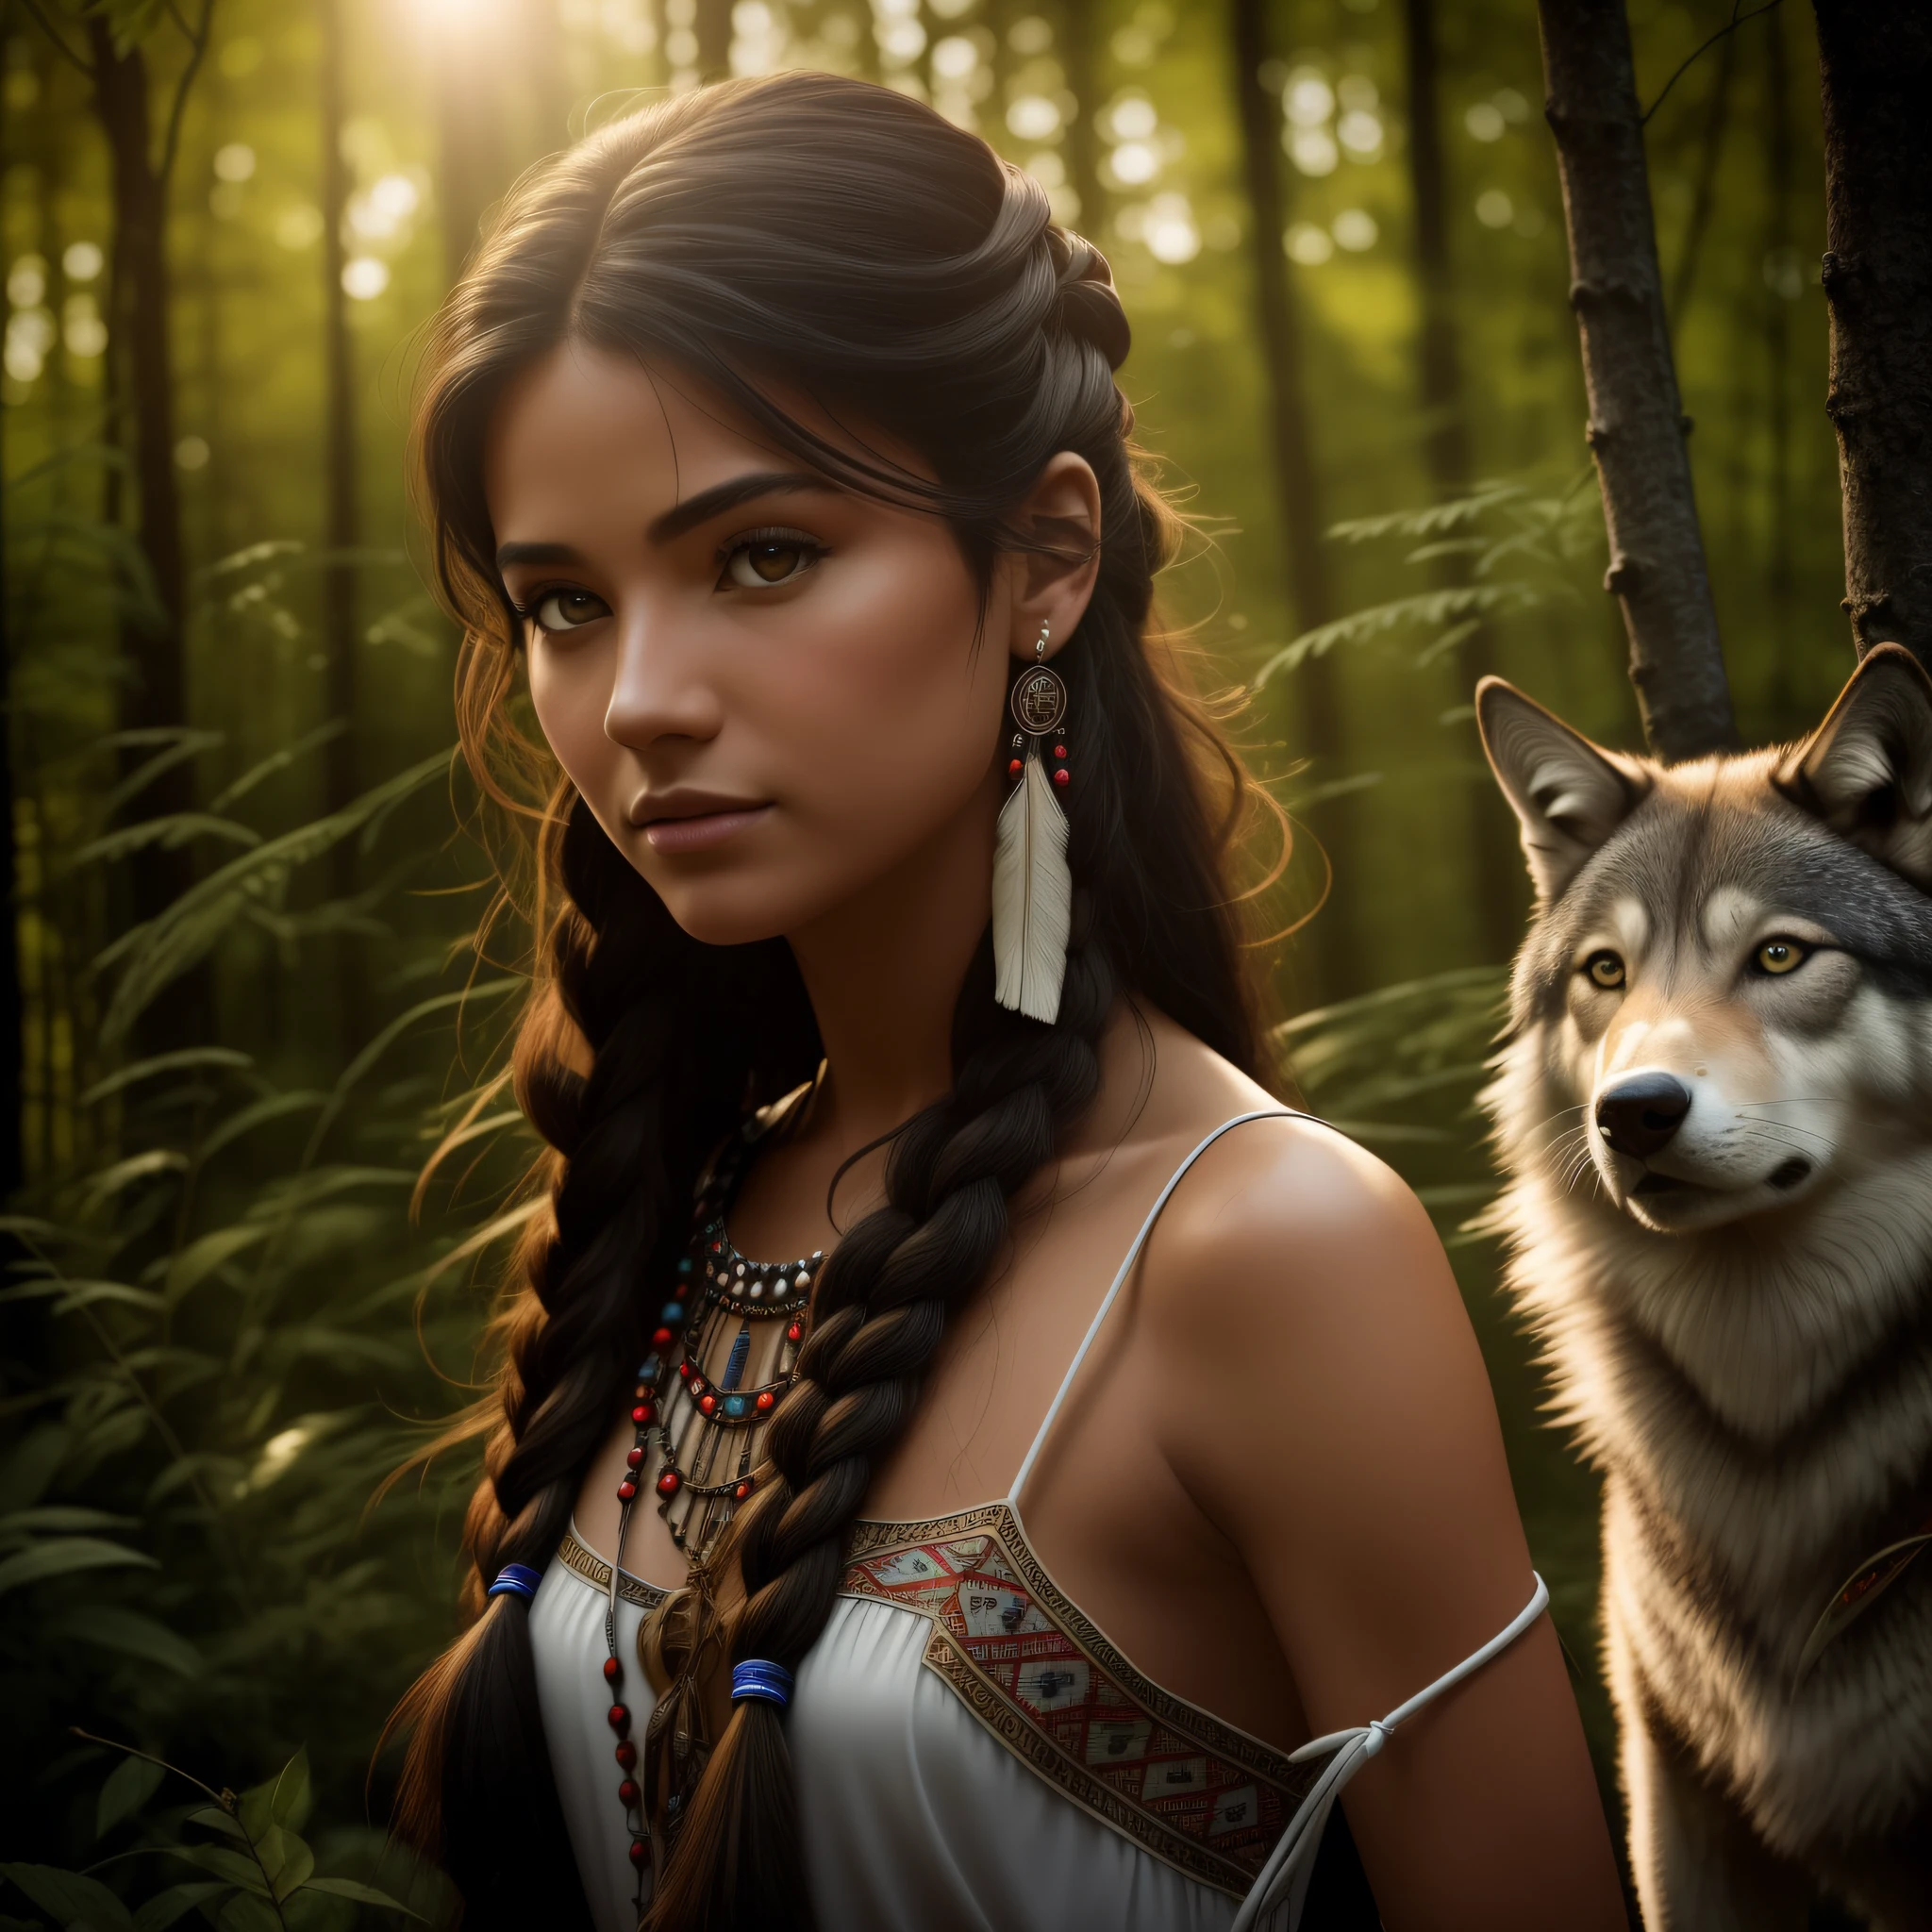 (meilleure qualité, chef-d&#39;œuvre: 1.1), (le réalisme: 1.4),(chef-d&#39;œuvre, réaliste: 1.4), (extrême précision: 1.2); (Devant: 1.3), réaliste portrait of a Native American girl with indigenous adornments with her ultra réaliste pet wolf in the forest, Robe tribale, cheveux très longs, épaules nues, ciel de nuit, lueur de galaxie, océan, eau, inclinaison de la tête, vent, des nuages, Lumière naturelle, Extérieur, seulement, CASSER, lumière cinématographique, Ultra haute résolution, 8k euh, Perles de film,  anatomie parfaite, Delicate and délicat skin, Meilleures ombres, délicat, brut, Haute résolution, chasseresse, nuit, luminosité de la pleine lune.